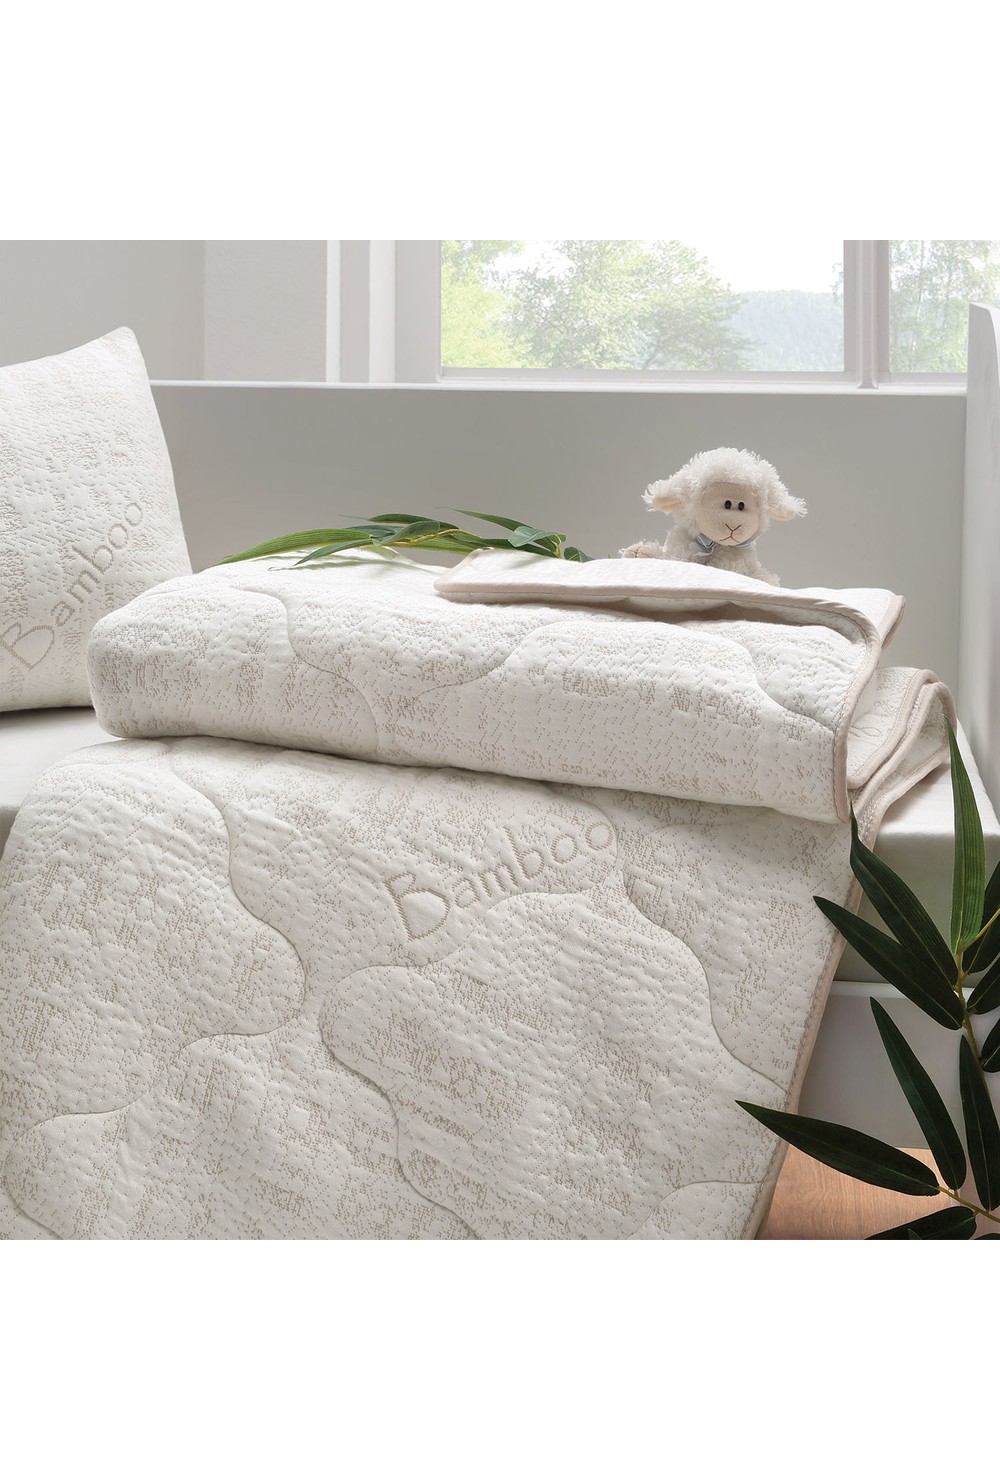 Yataş Bedding Bebek Tekstili ve Modelleri